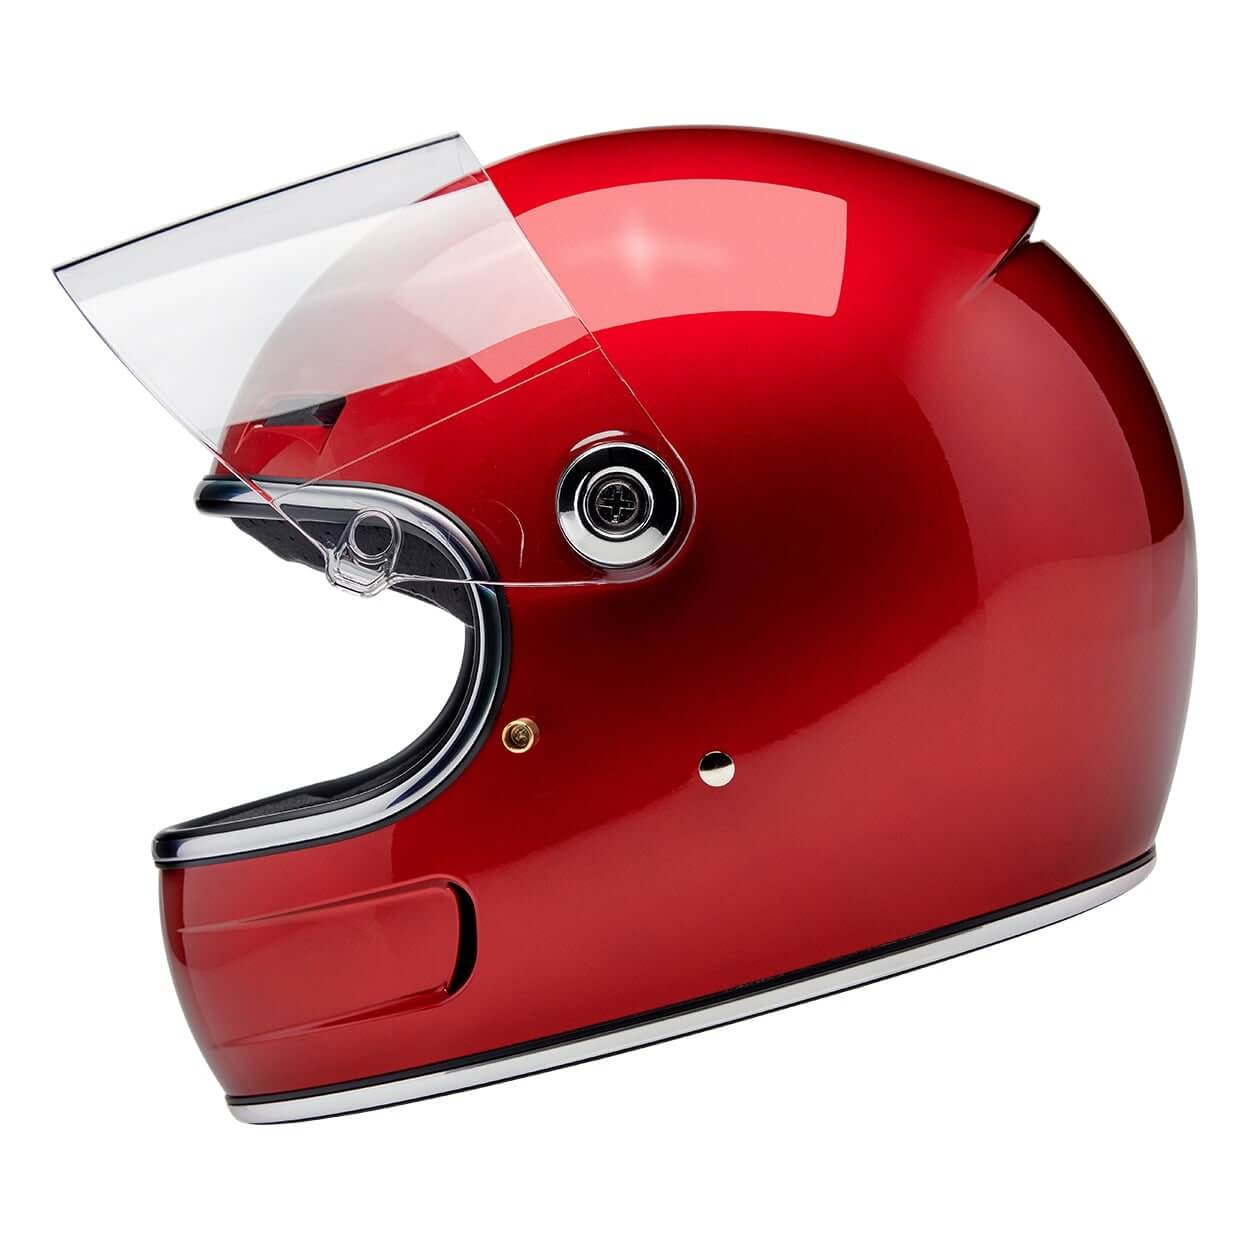 Biltwell Inc | Gringo SV Helmet - Metallic Cherry Red - XS - Motorcycle Helmet - Peak Moto